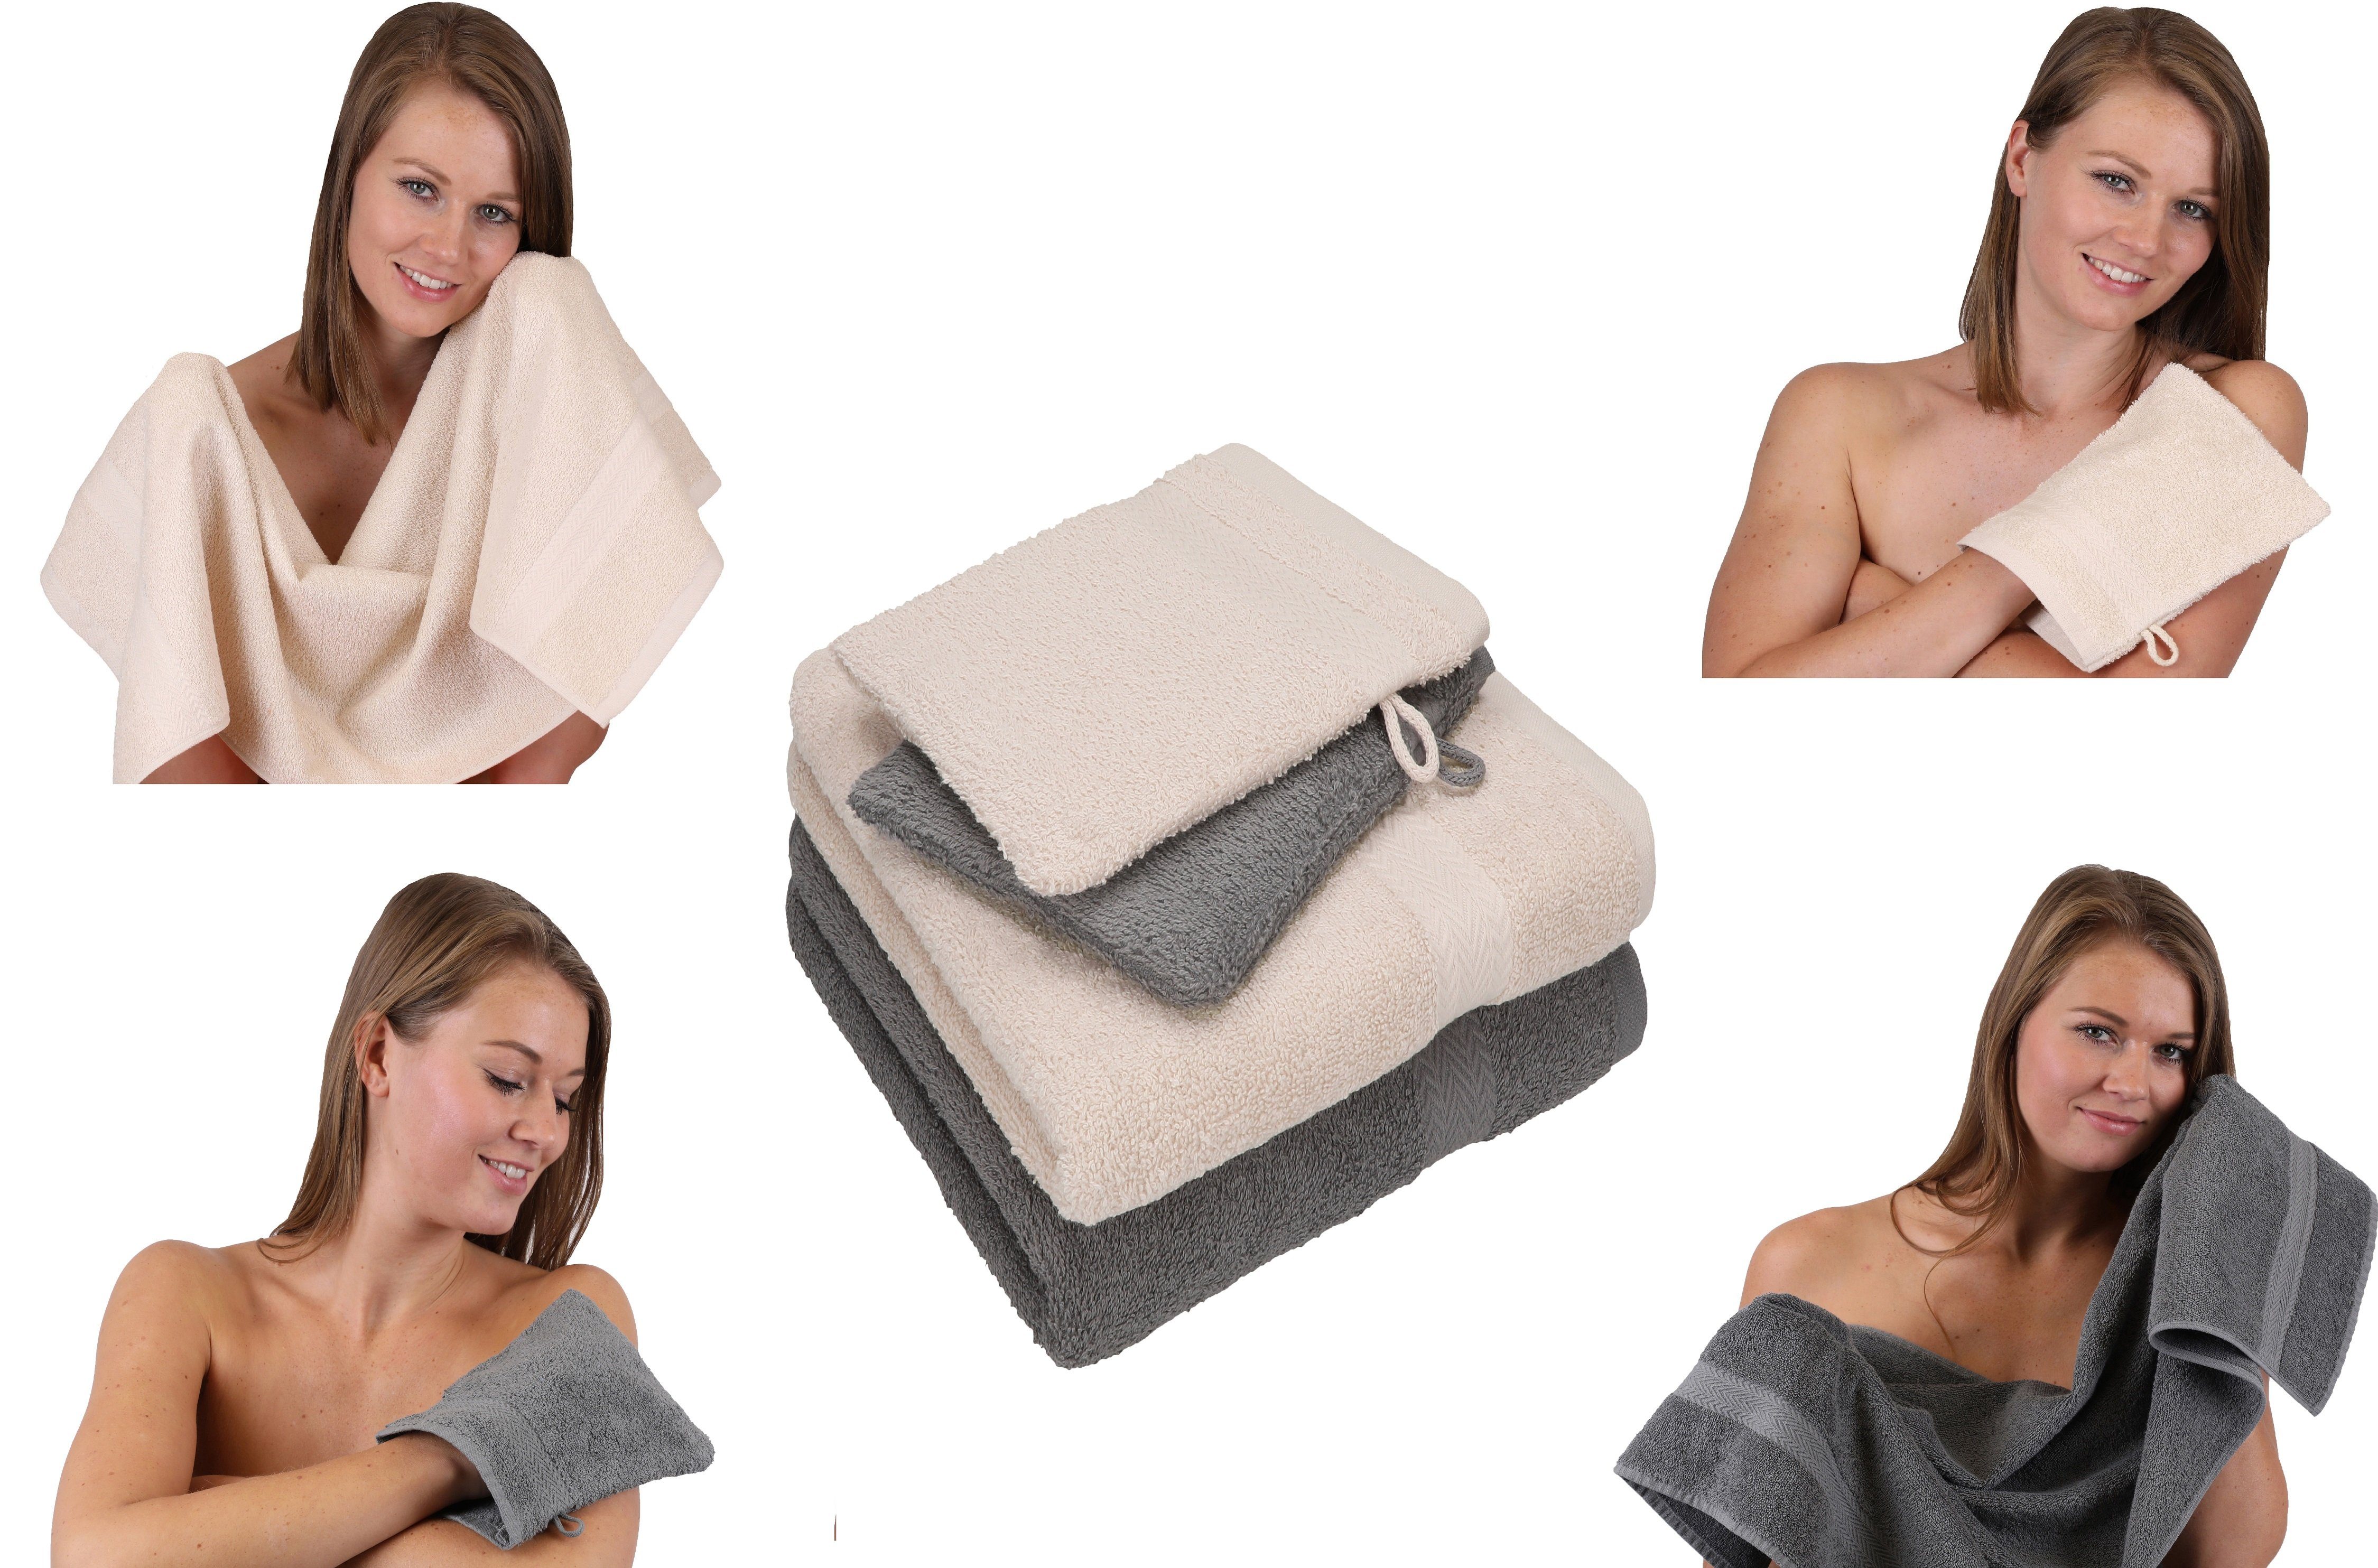 Betz Handtuch Set Handtuch 4 TLG. 100% Baumwolle Set grau 100% anthrazit Waschhandschuhe, - 2 Baumwolle 2 Handtücher Happy sand Pack